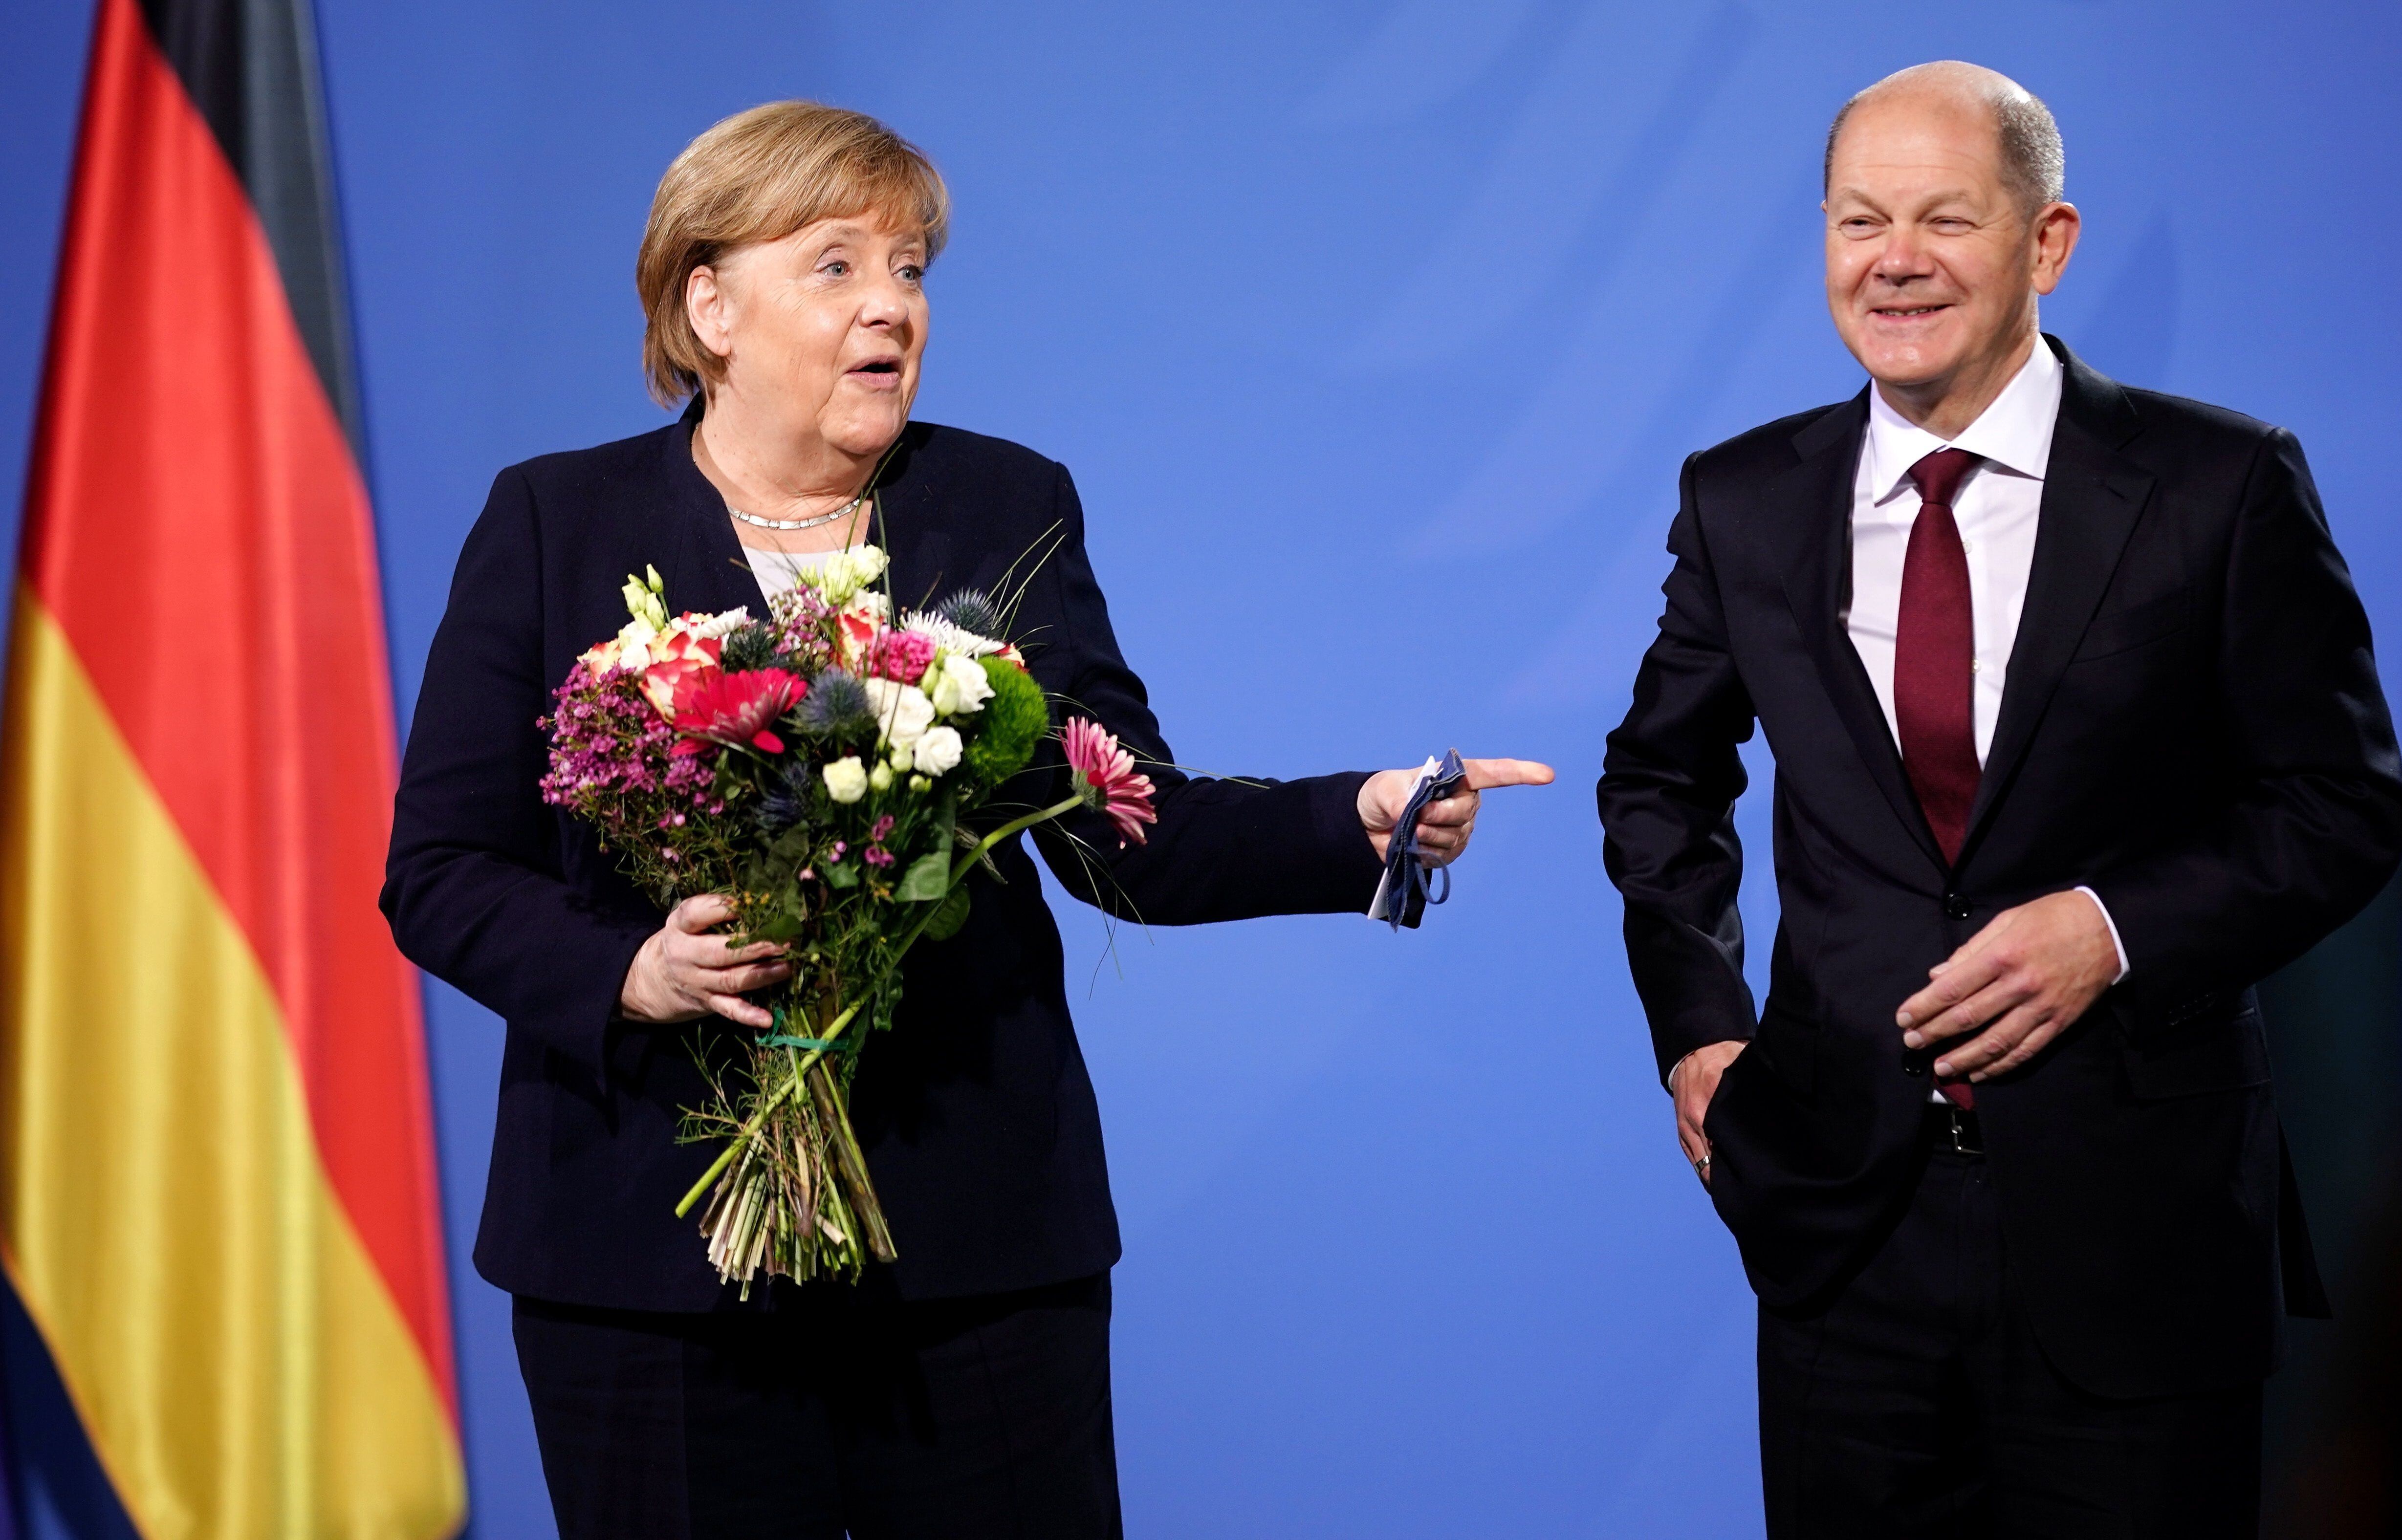 El canciller alemán, Olaf Scholz, junto a su antecesora en el cargo, Angela Merkel, durante su ceremonia de investidura en el cargo, este miércoles en Berlín. EFE/CLEMENS BILAN